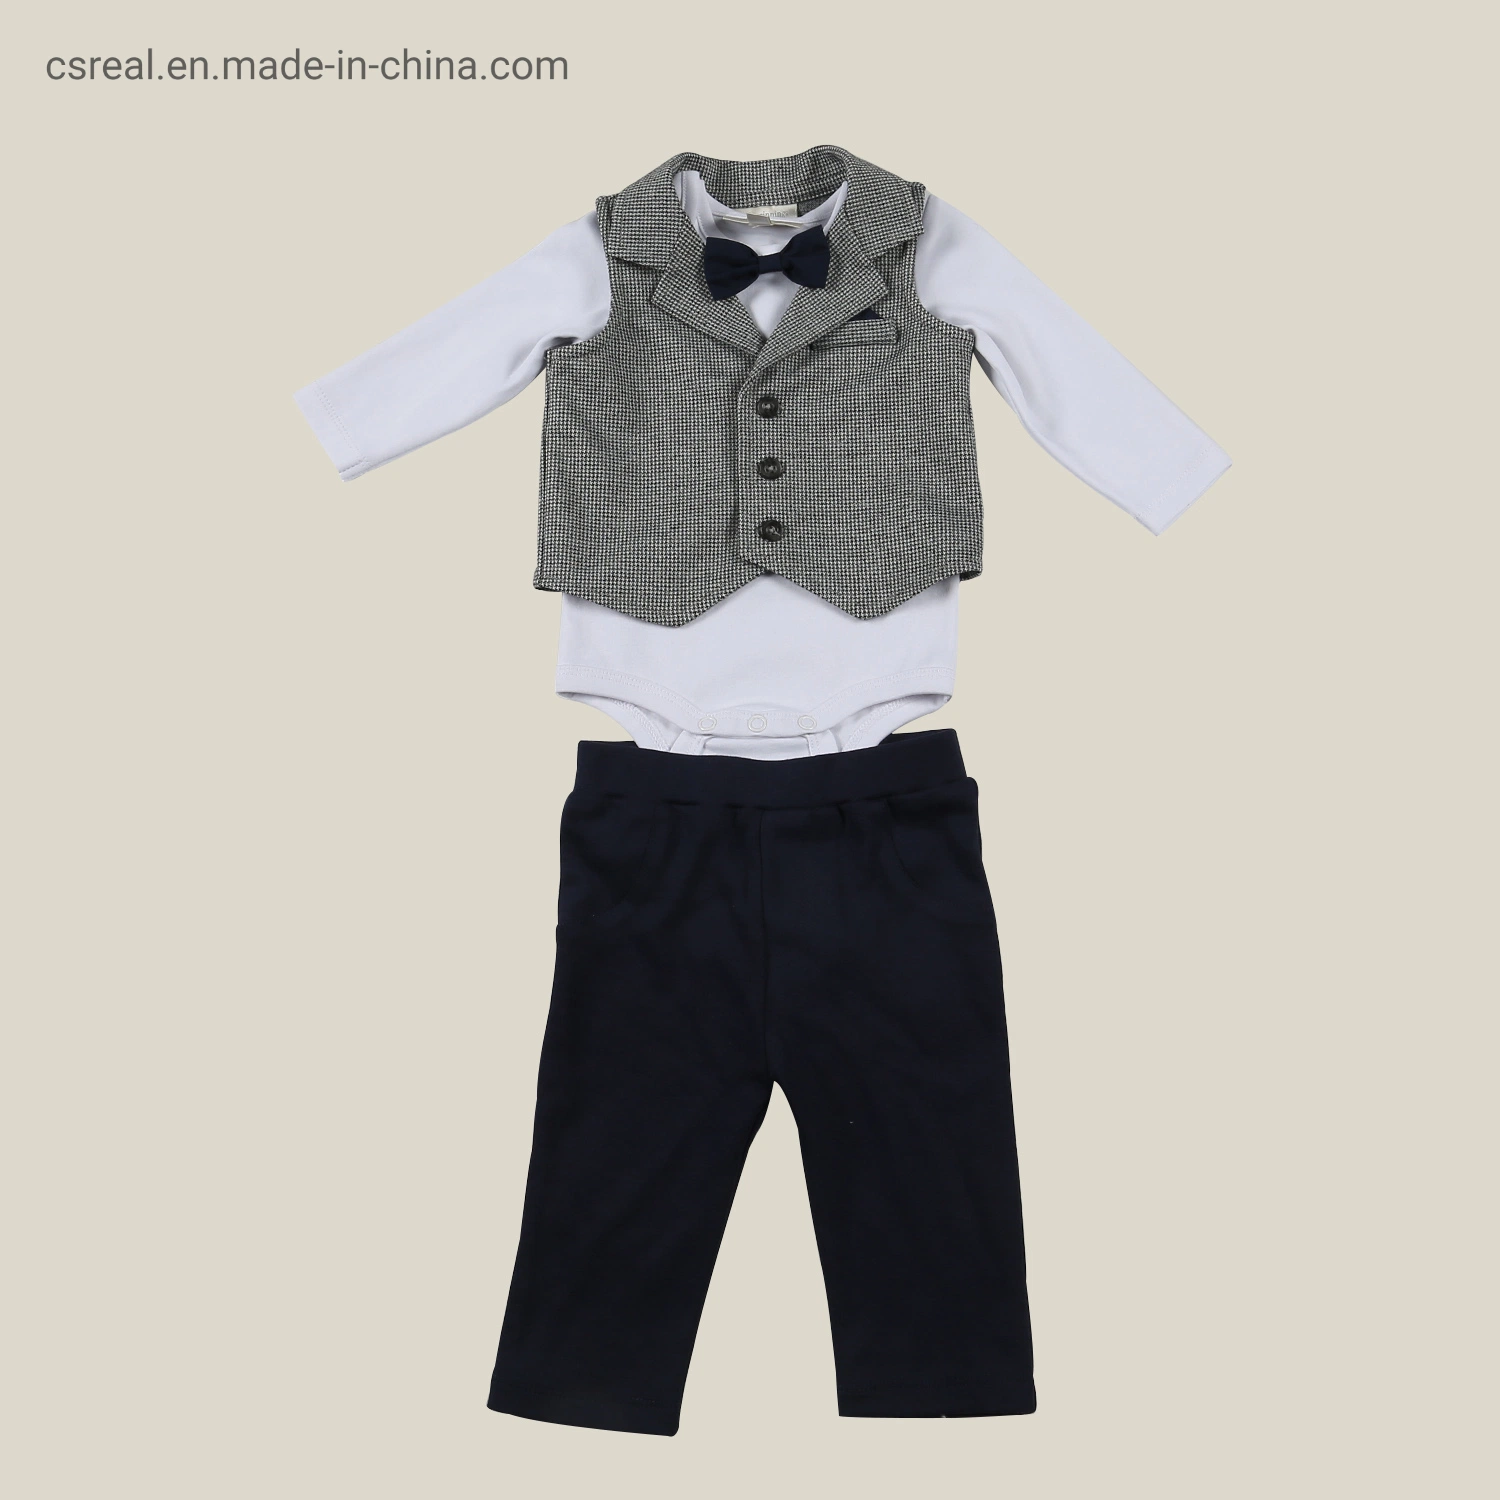 Infant Children Clothes Boy Grey Vest White Romper Black Pant Suit Wear